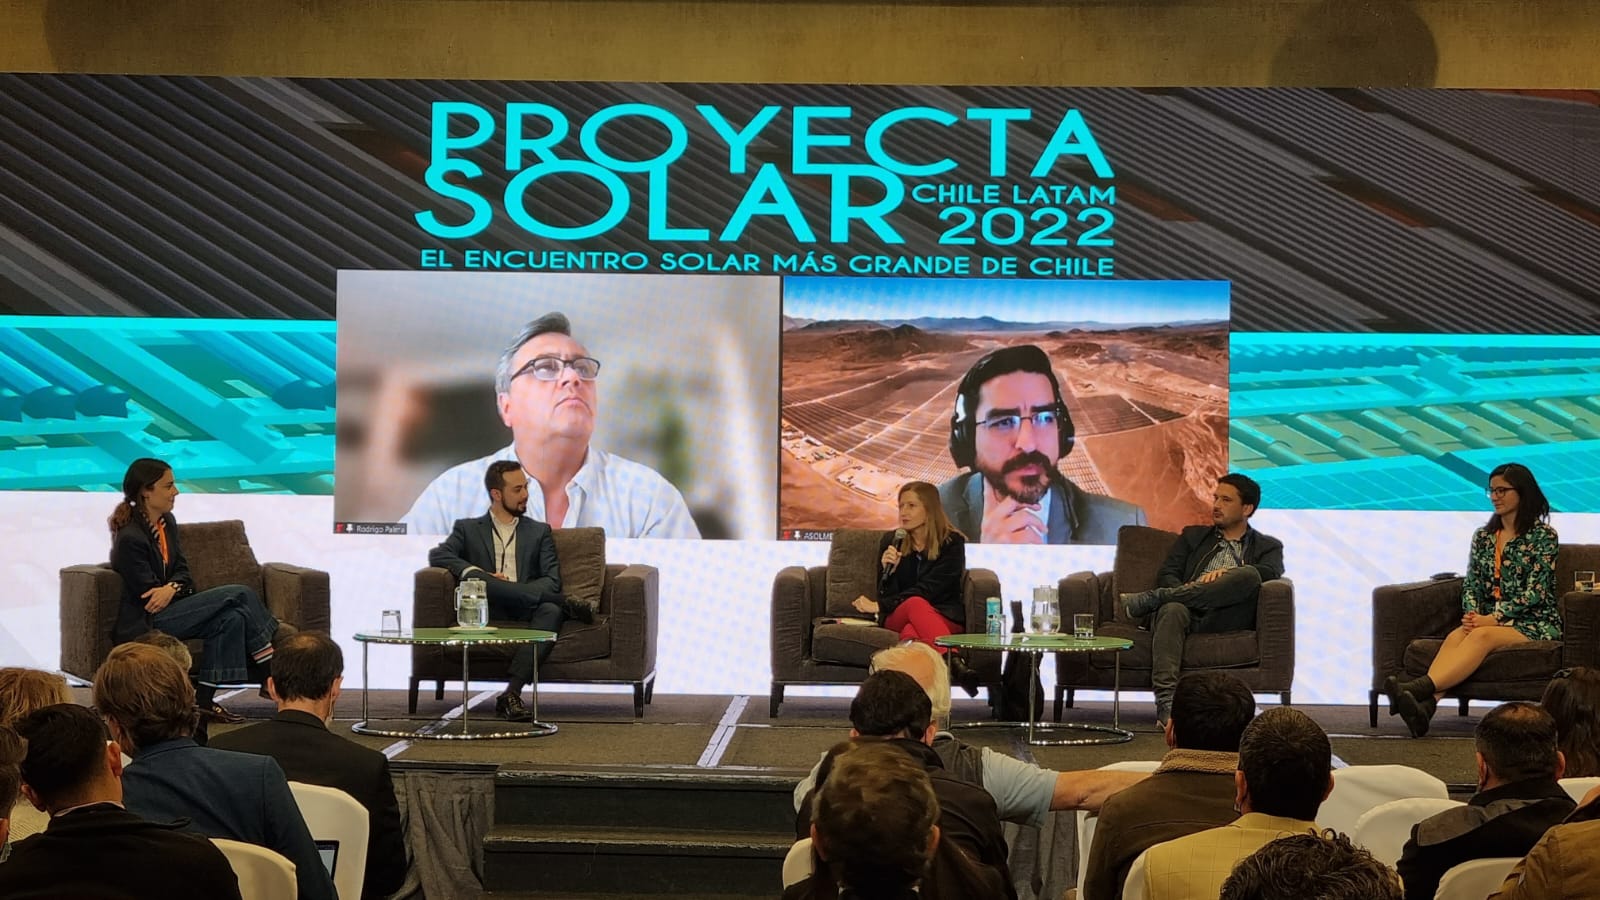 El Centro De Energía Participa En El «Proyecta Solar Chile Latam 2022»